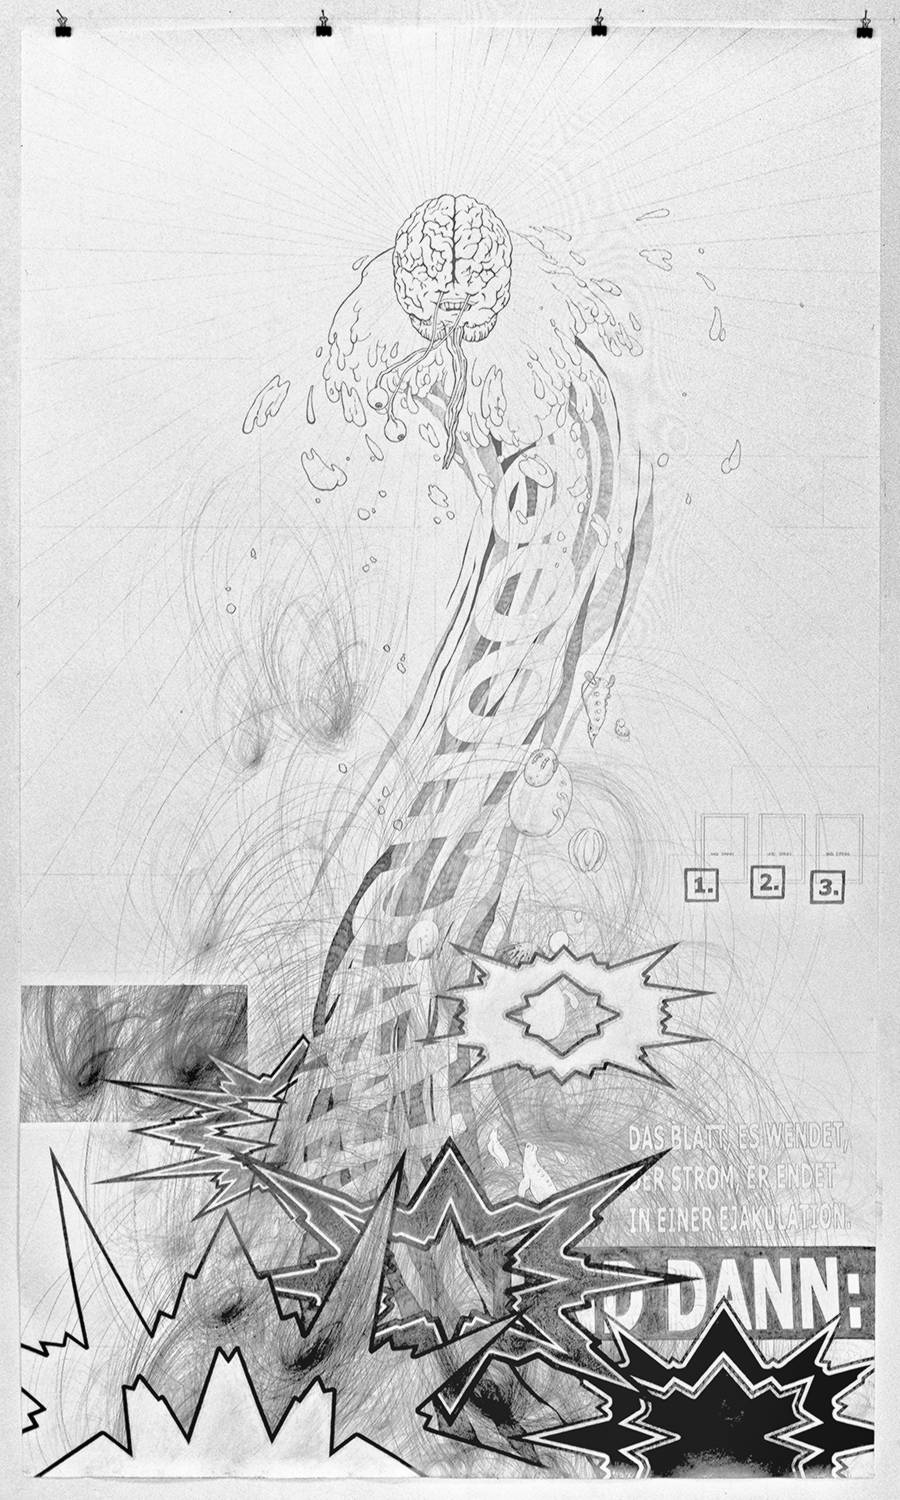 2nd drawing “DAS BLATT, ES WENDET” (2006)